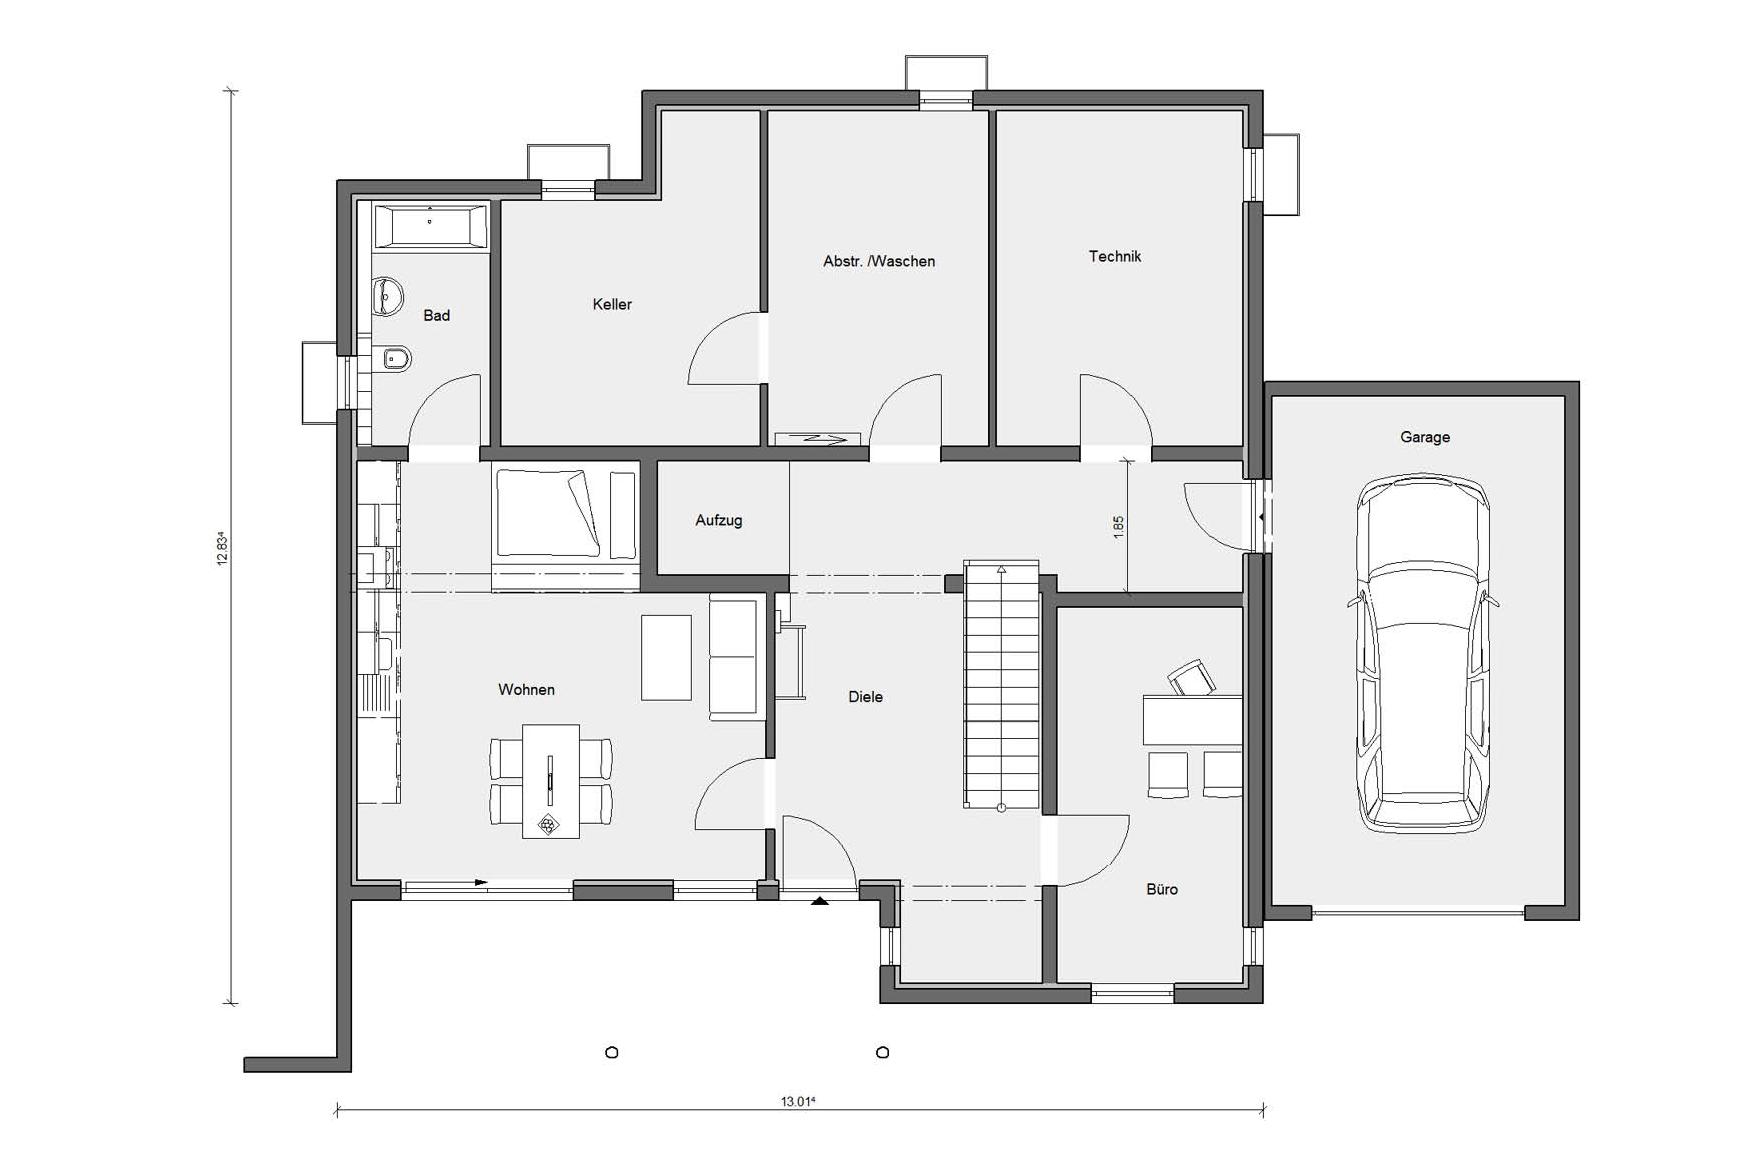 Plan d'étage grenier M 20-321.1 Maison préfabriquée accessible aux fauteuils roulants